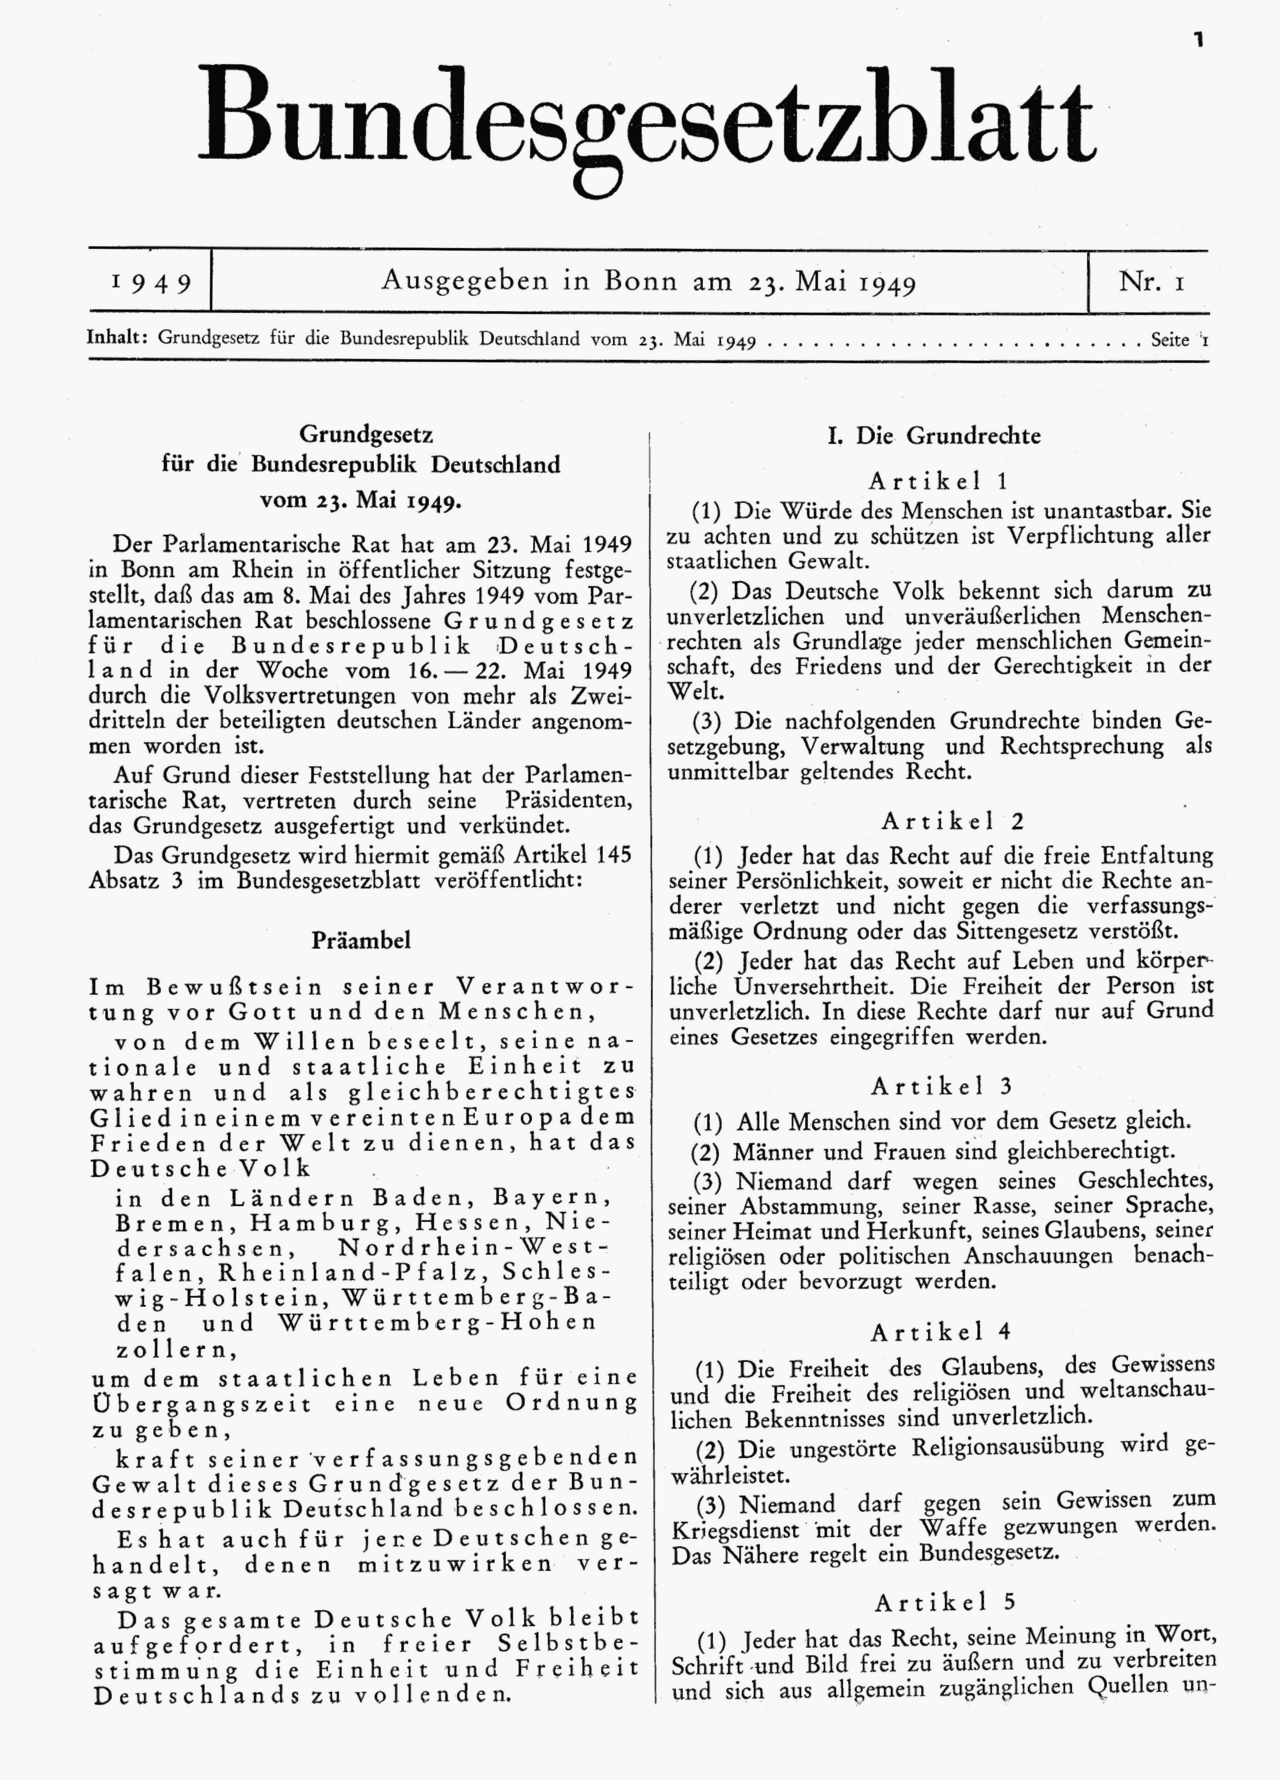 Erste Ausgabe des Bundesgesetzblatts I vom 23.05.1949 mit dem Text des Grundgesetzes; Foto: Parlamentarischer Rat, Public domain, via Wikimedia Commons https://upload.wikimedia.org/wikipedia/commons/7/78/GG1949.png